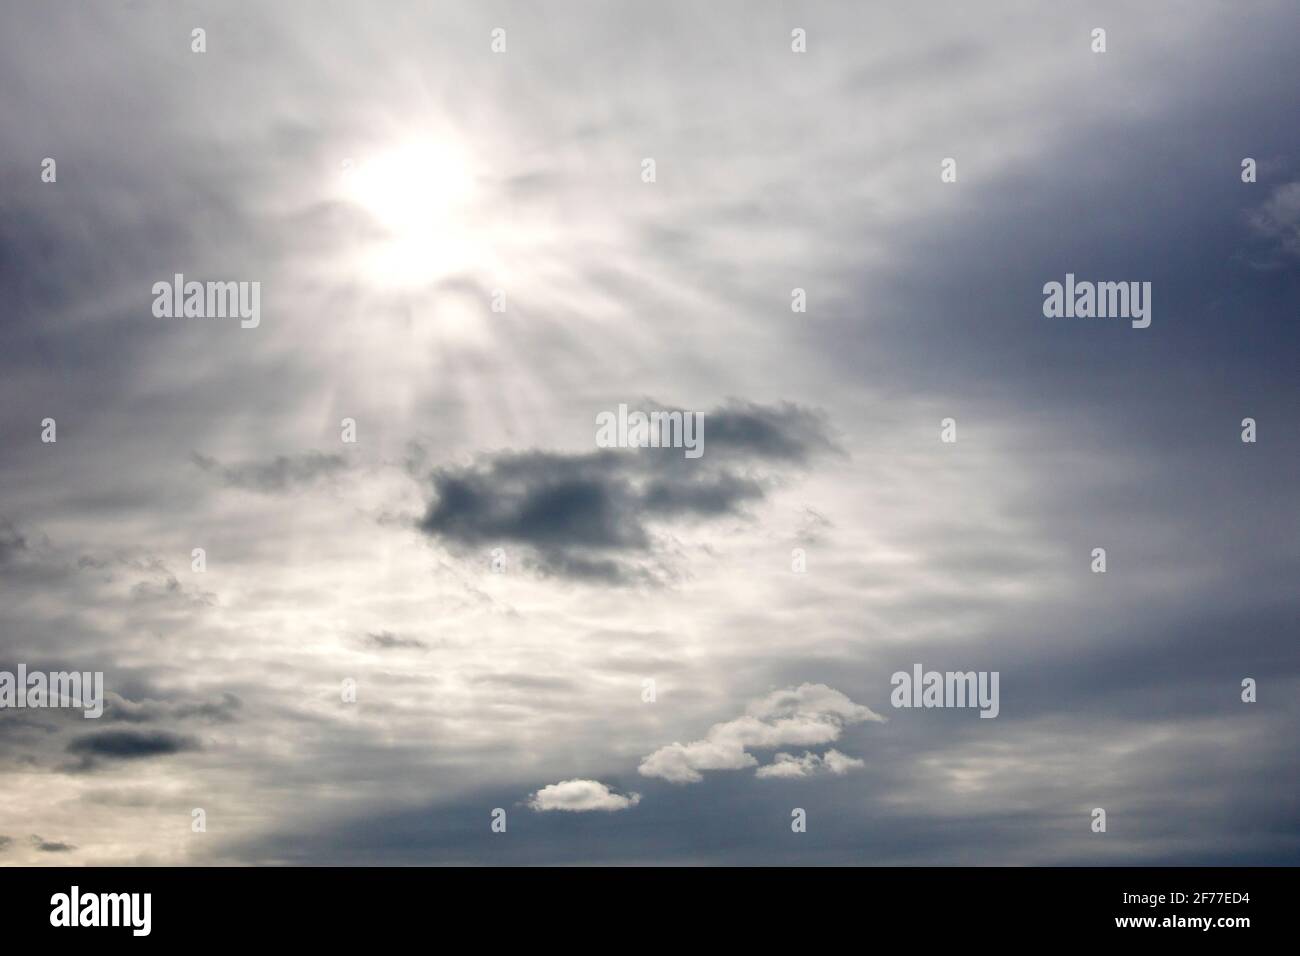 Un cielo sovrastato, la nuvola abbastanza sottile da consentire al sole di brillare debolmente attraverso e illuminare alcune nuvole di livello inferiore. Foto Stock